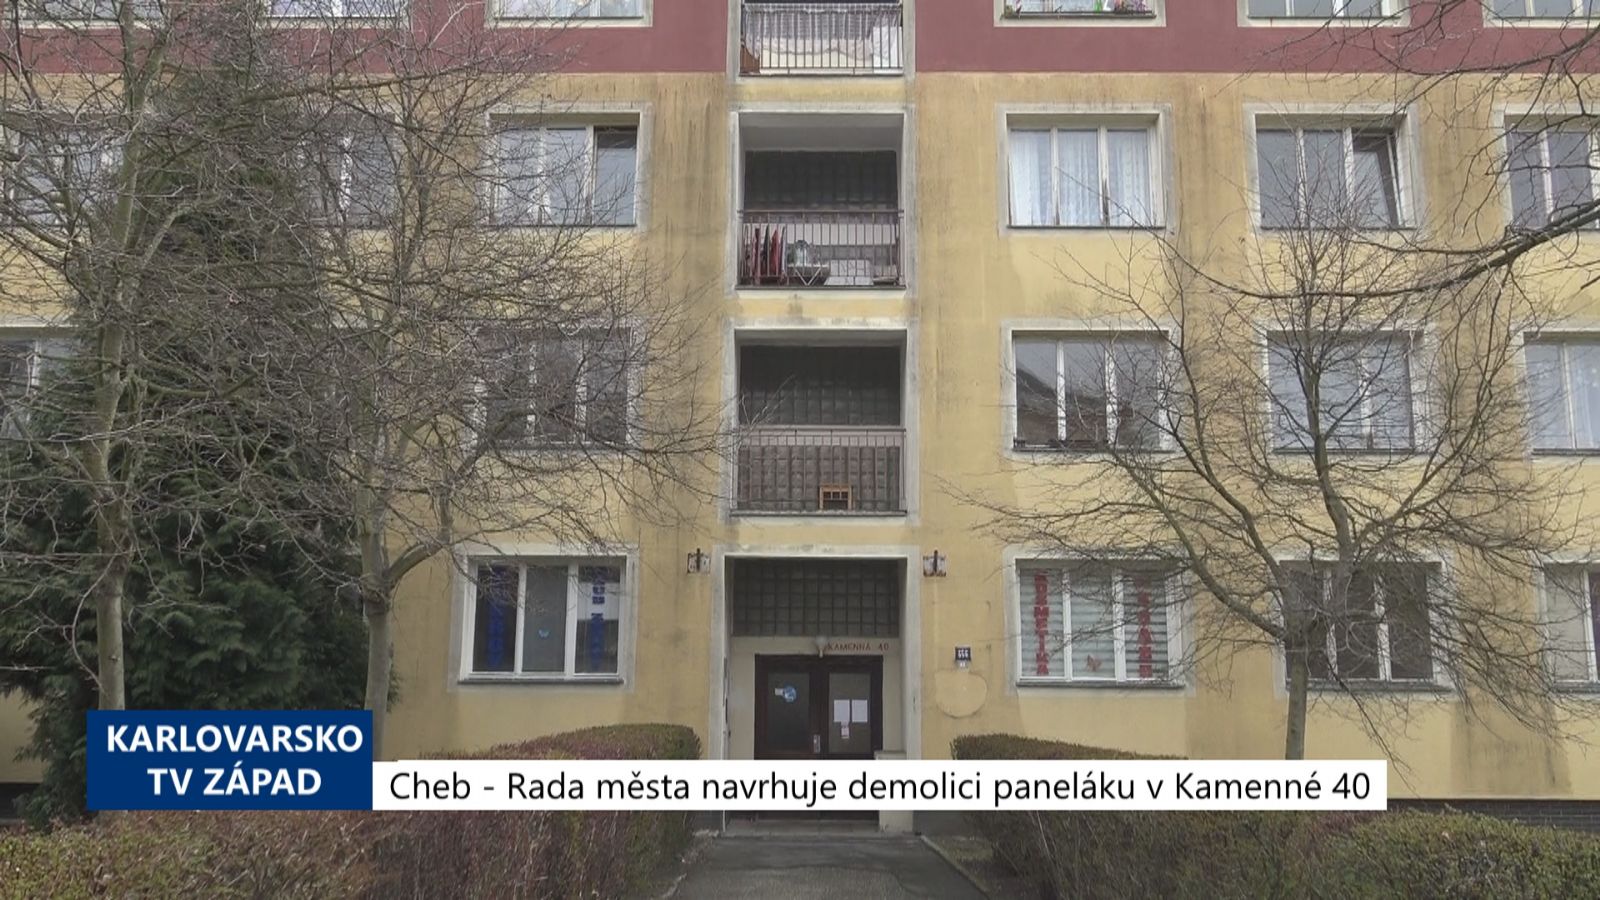 Cheb: Rada města navrhuje demolici paneláku v Kamenné 40 (TV Západ)